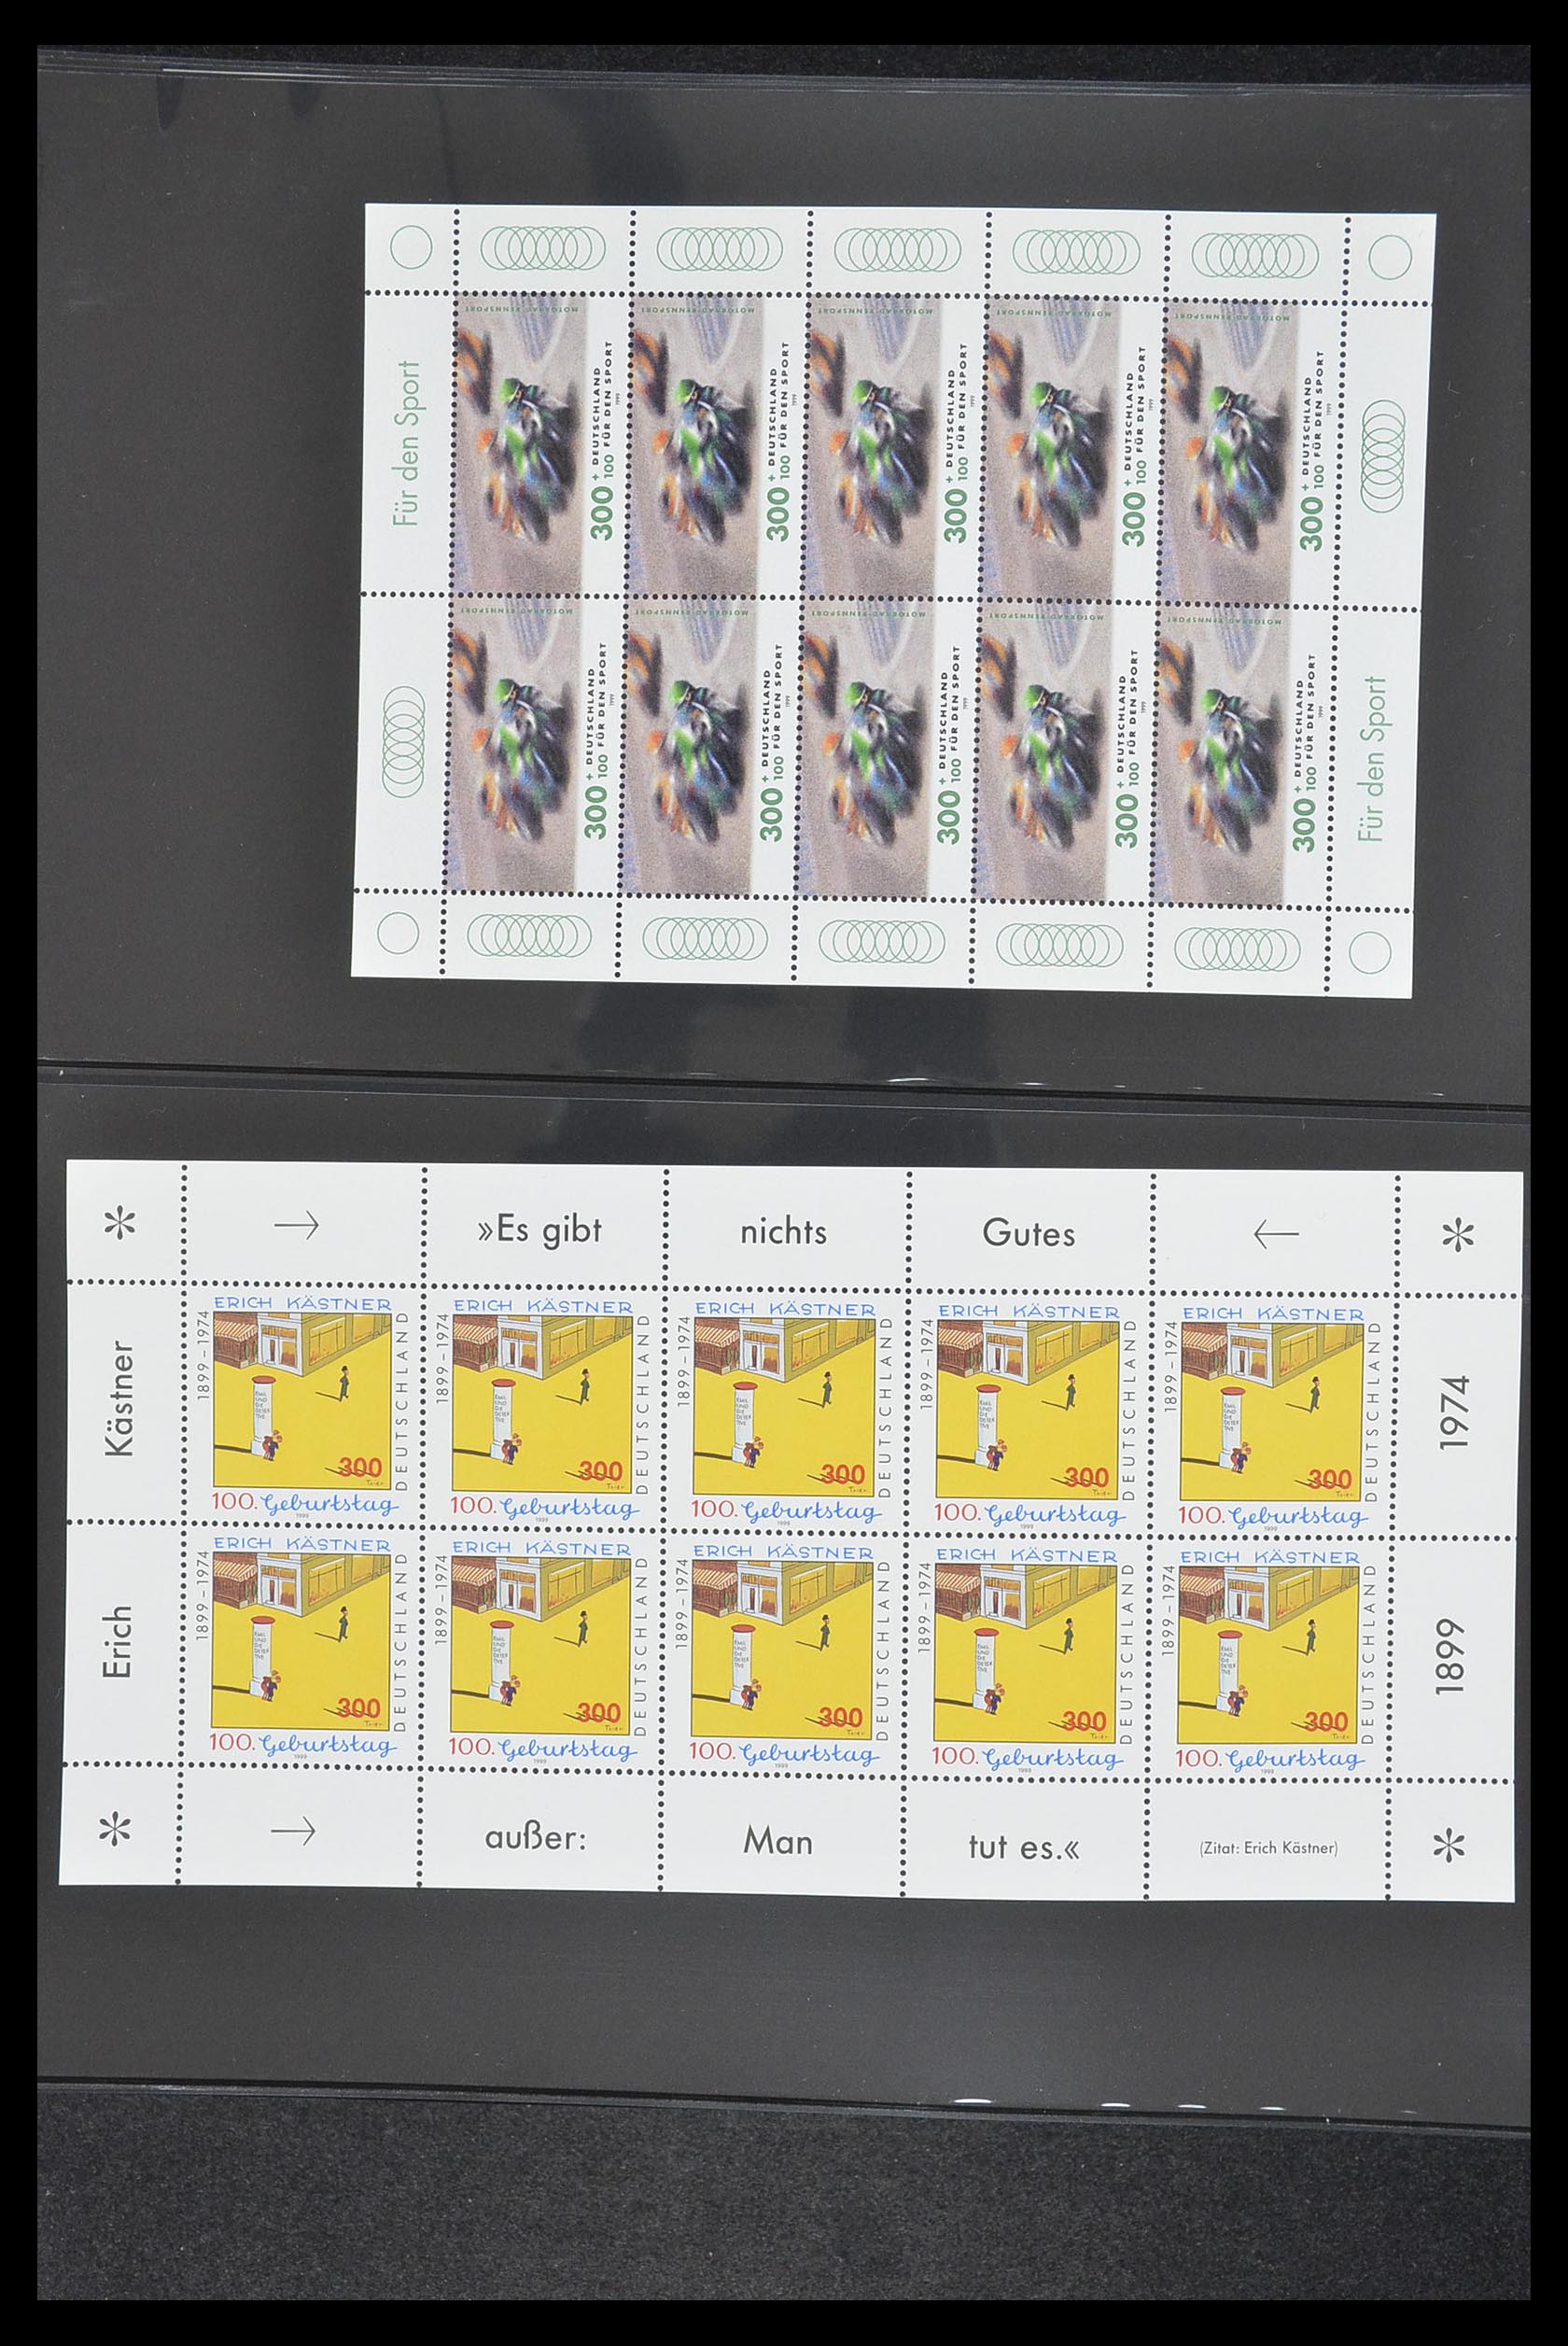 33936 125 - Stamp collection 33936 Bundespost kleinbogen 1994-2000.